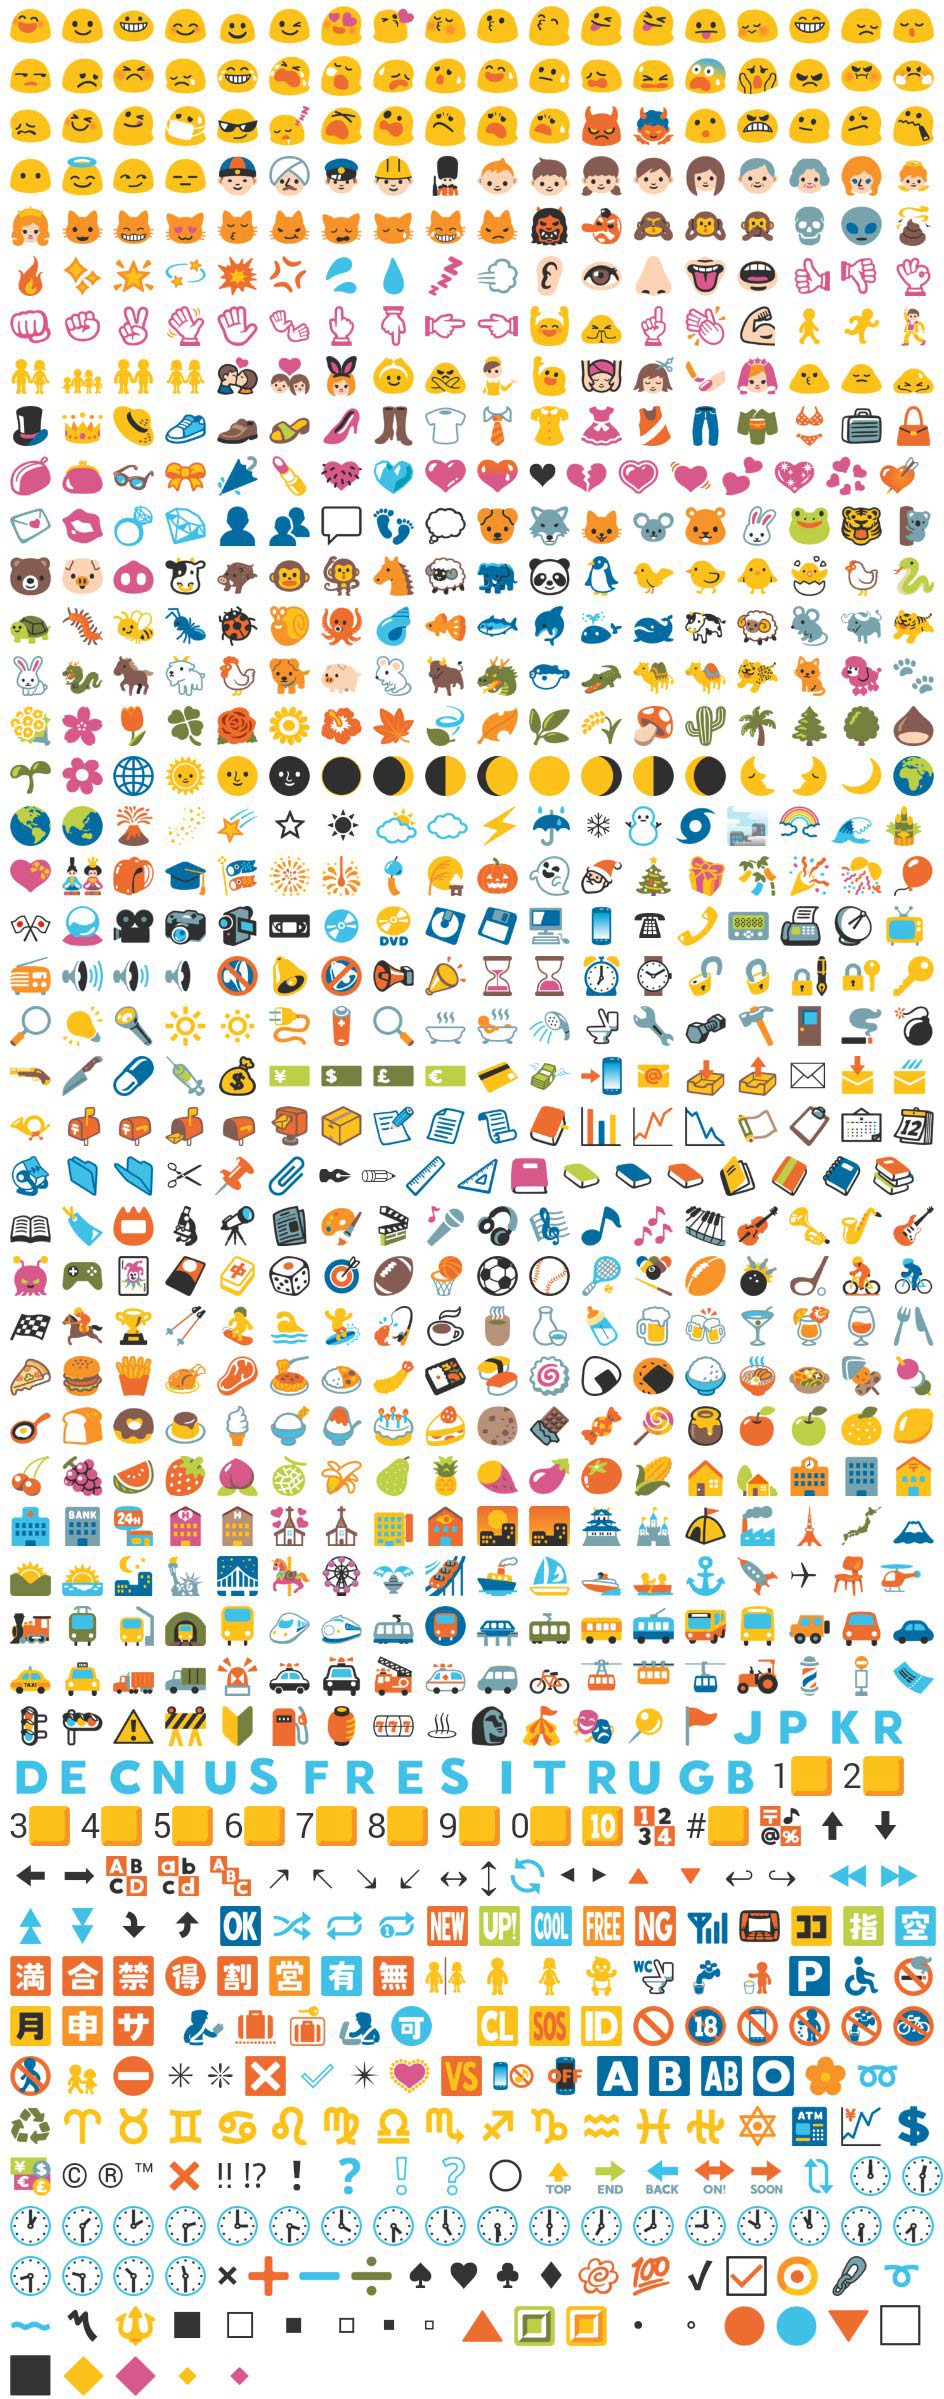 Featured image of post Emojis Para Copiar Si est s buscando copiar y pegar emojis s mbolos y emoticonos para tu blog o redes sociales has llegado al lugar indicado